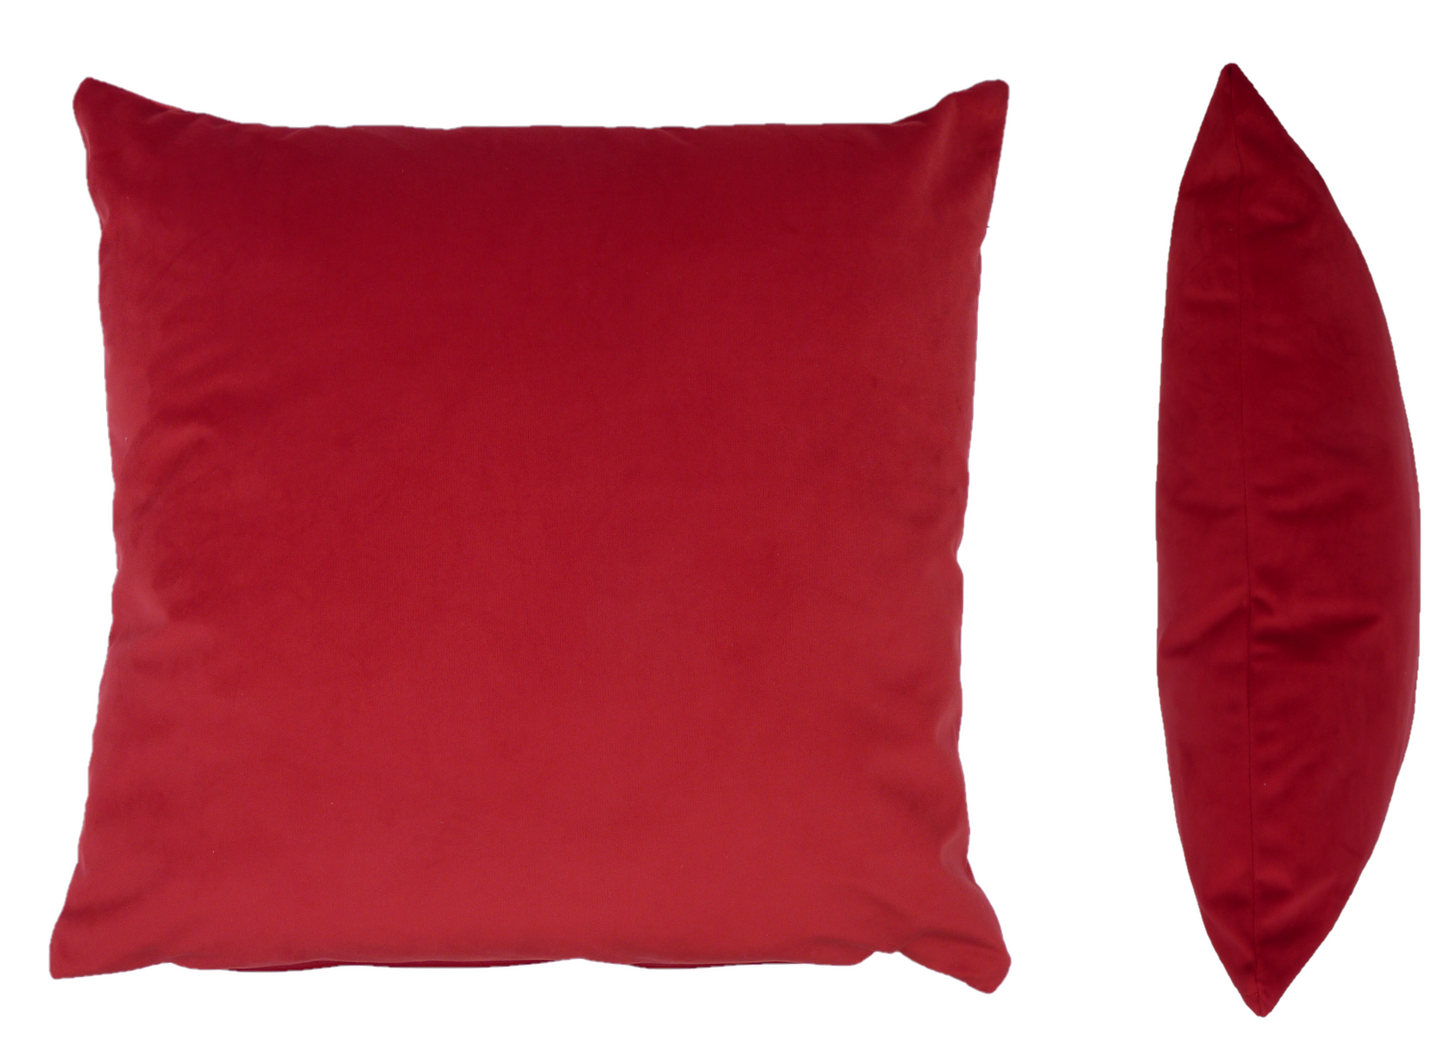 Opulence Scarlet Red Velvet Cushion (50cm x 50cm)